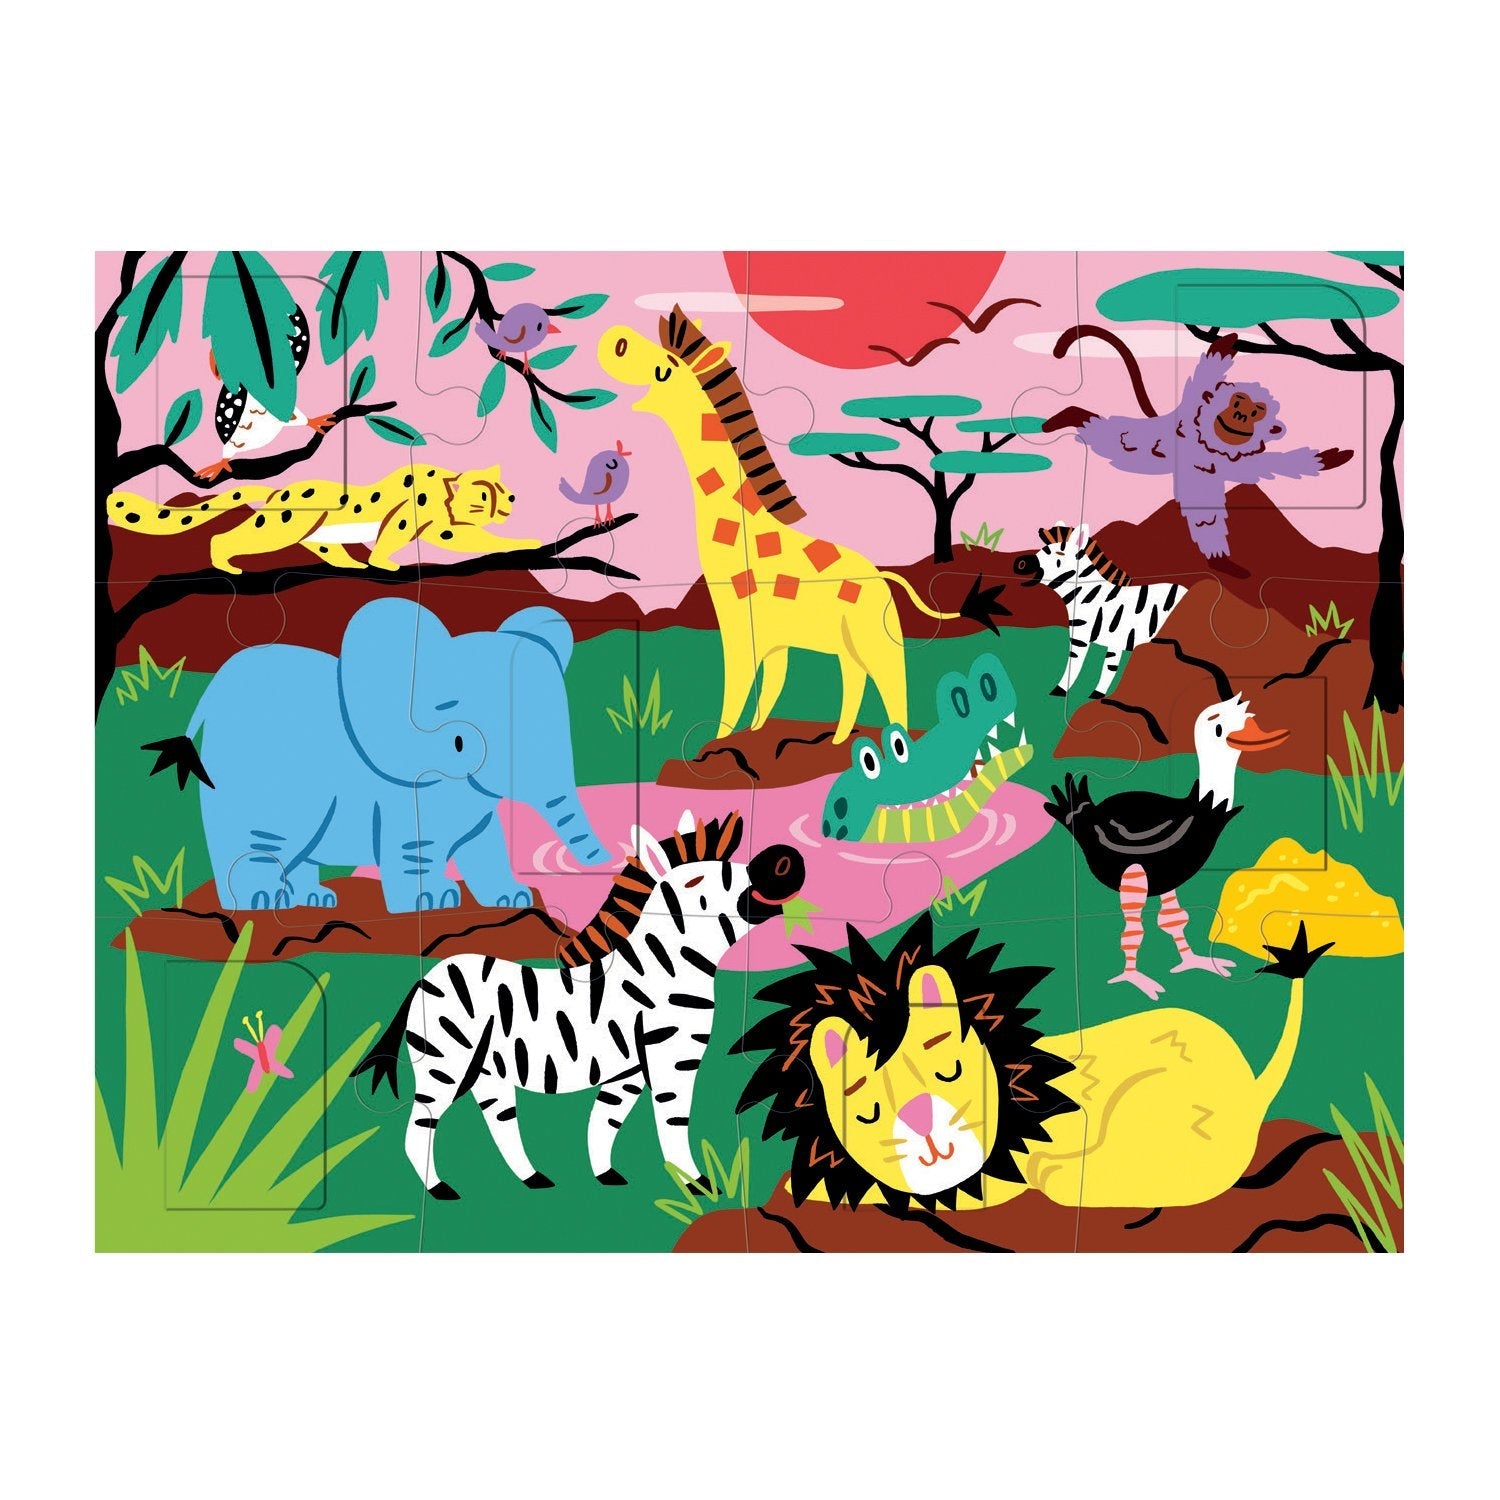 Jungle & Safari Magnetic Puzzle – Mudpuppy